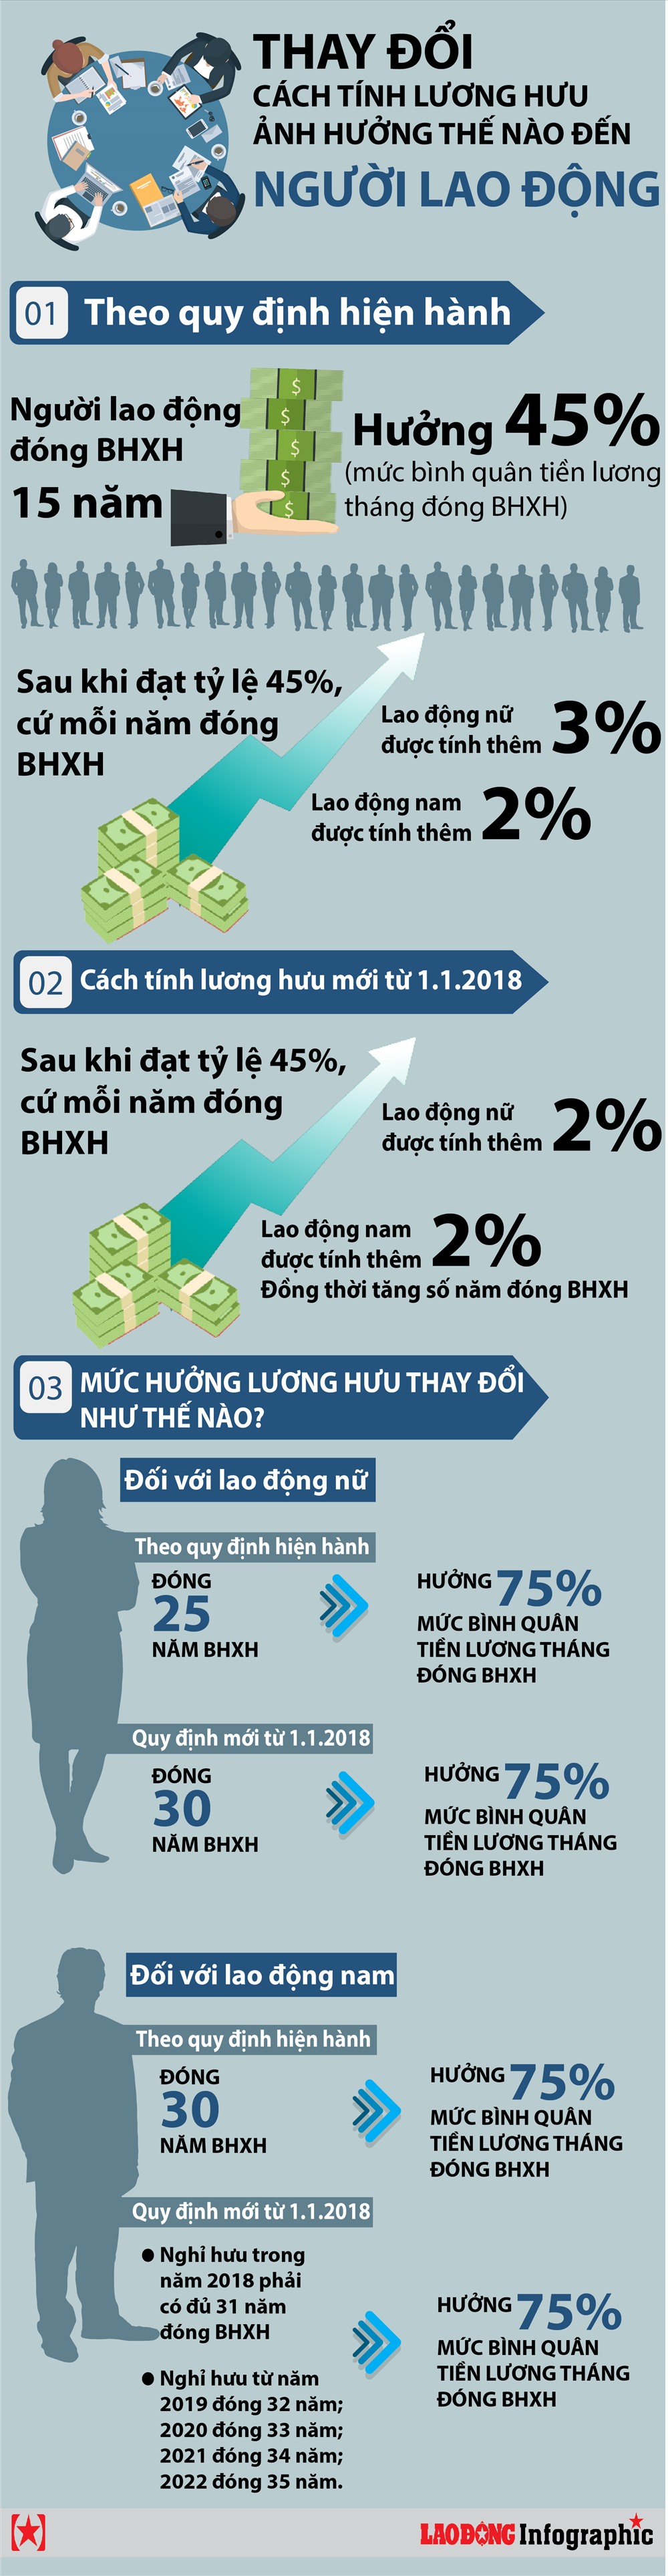 infographic luong huu tinh kieu moi thay doi nhu the nao